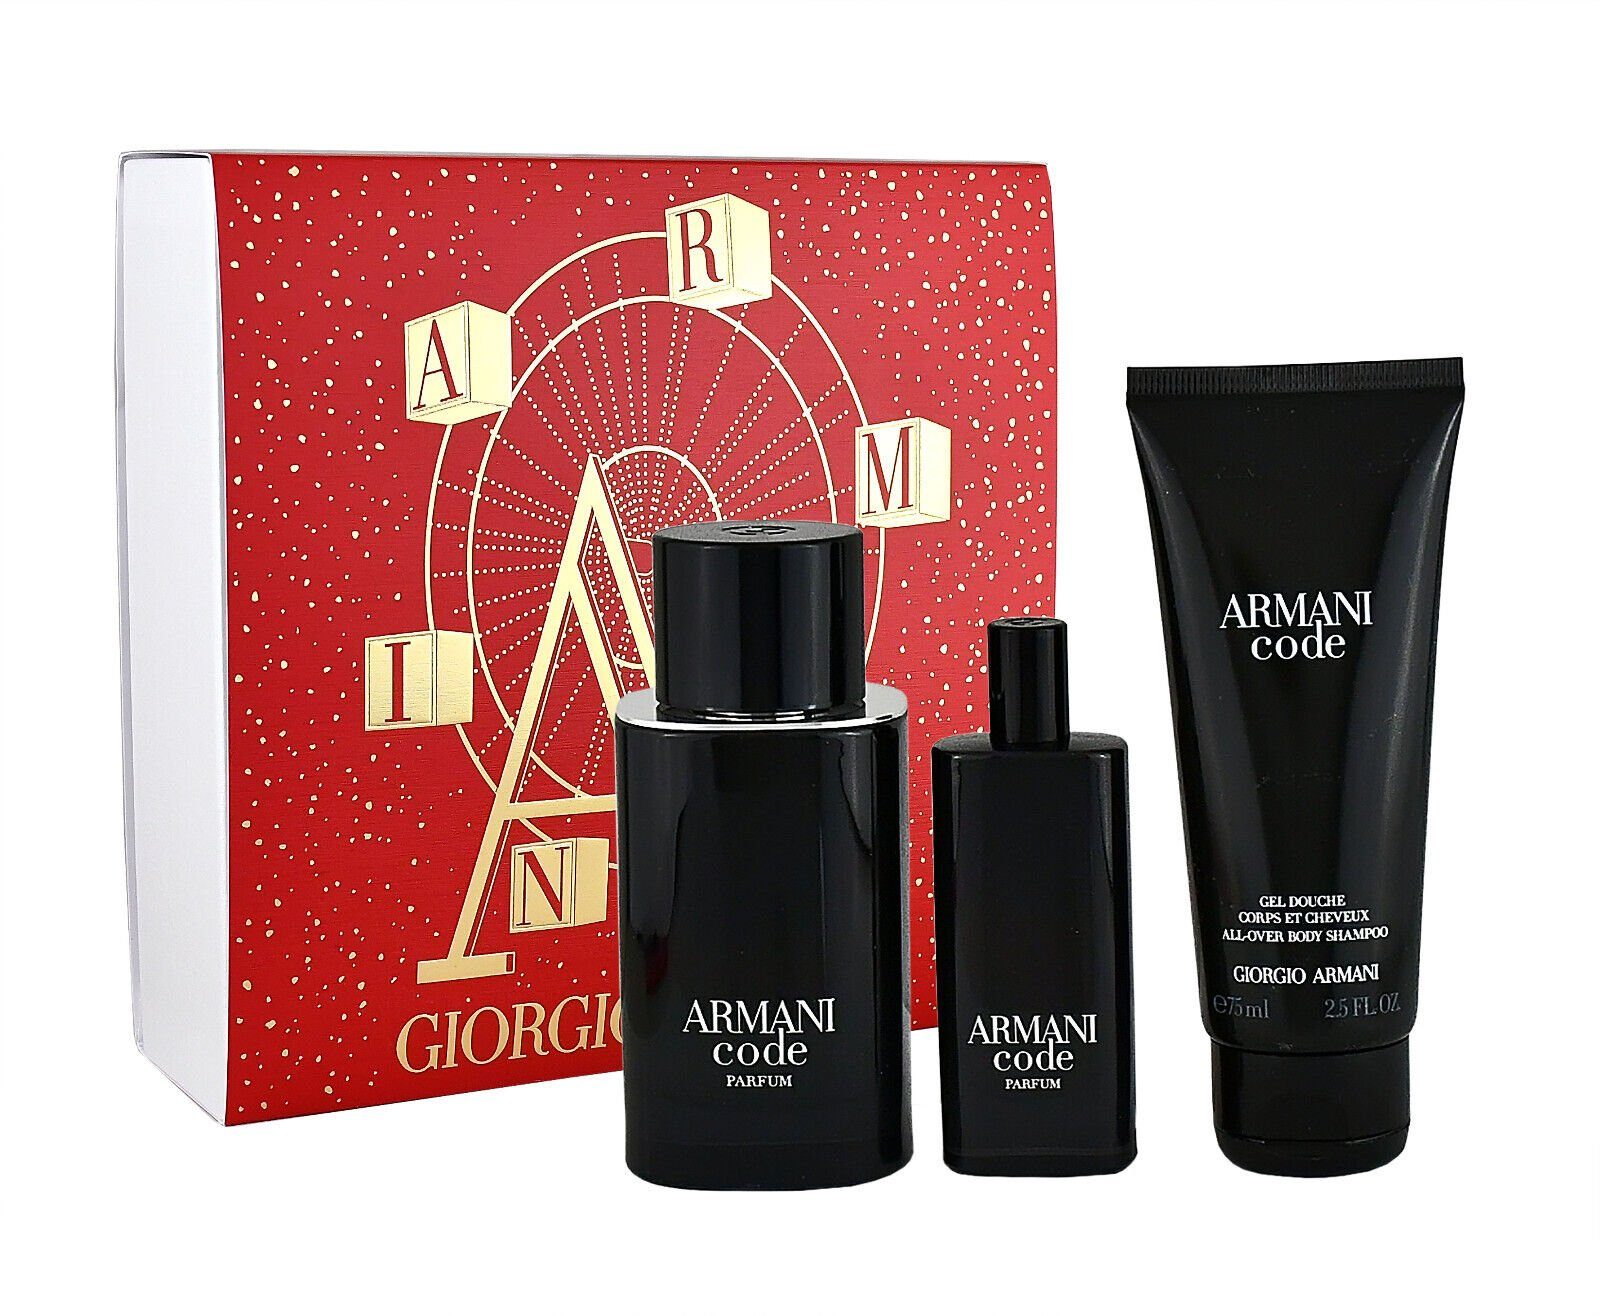 + EDP Parfum 75ml ASB Duft-Set Armani 75ml Giorgio Le Armani + EDP Code 15ml